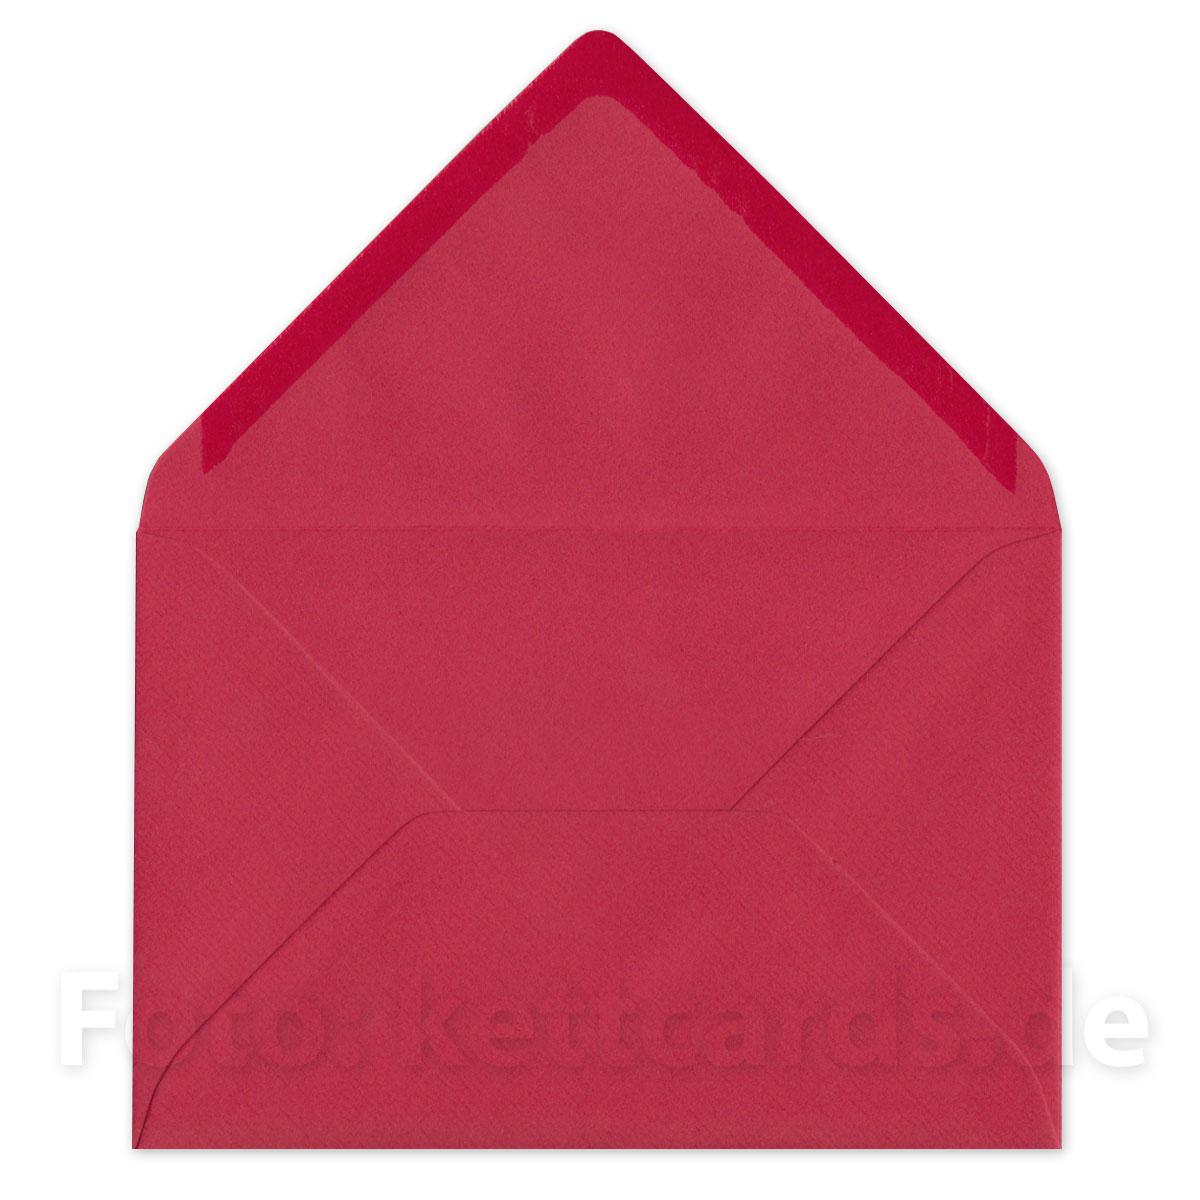 10 witzige Hochzeitseinladungen mit roten Kuverts: Wir heiraten